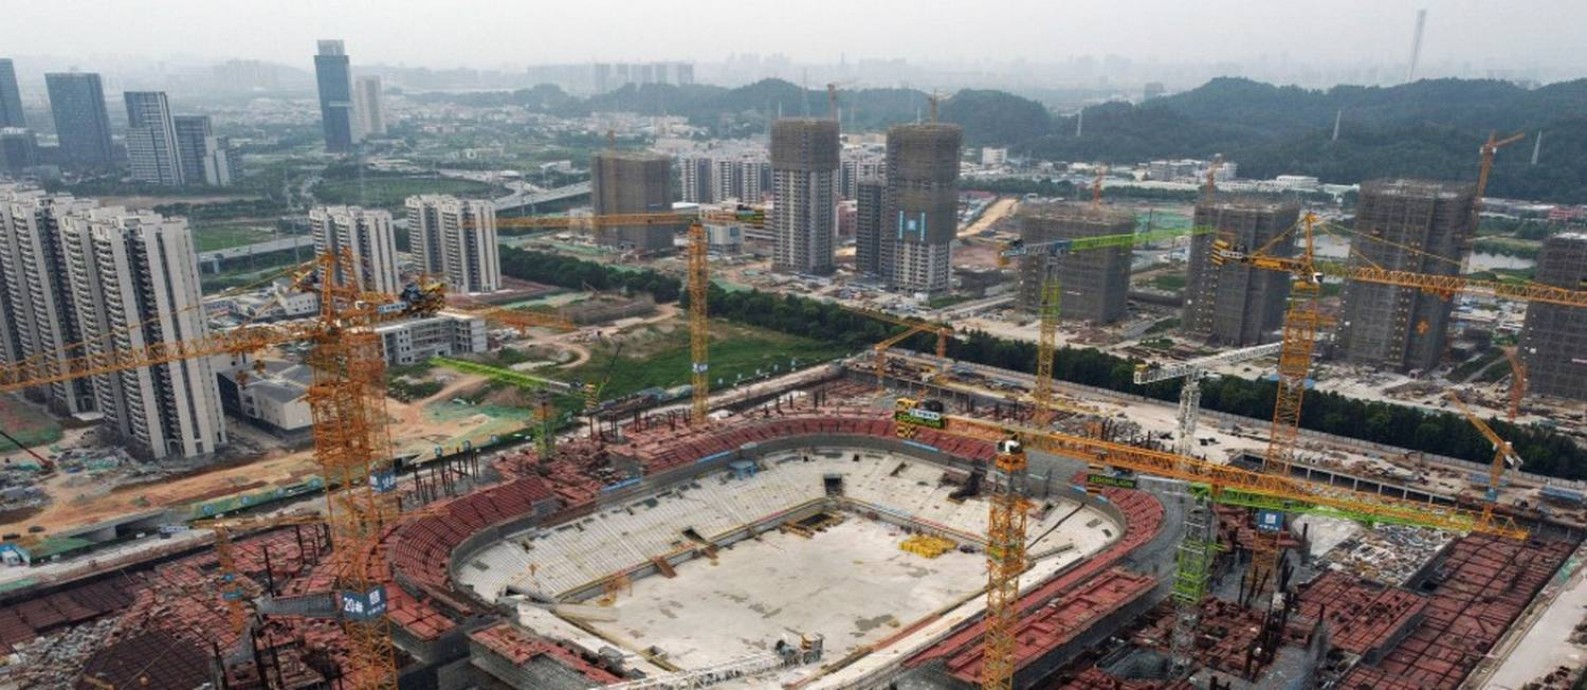 Vista aérea mostra o canteiro de obras do estádio do Guangzhou FC, desenvolvido pela Evergrande. Foto: THOMAS SUEN/ 26/09/2021 / REUTERS